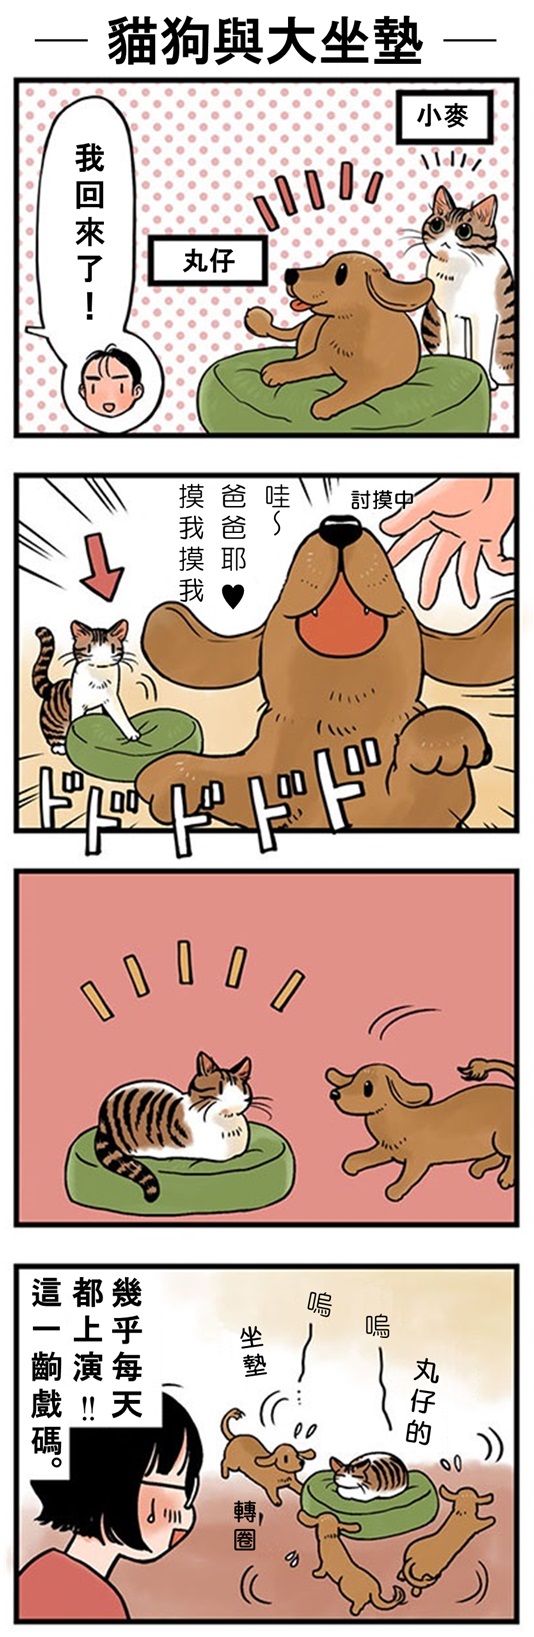 ★山野りんりん猫まみれ漫画★70話-1.jpg